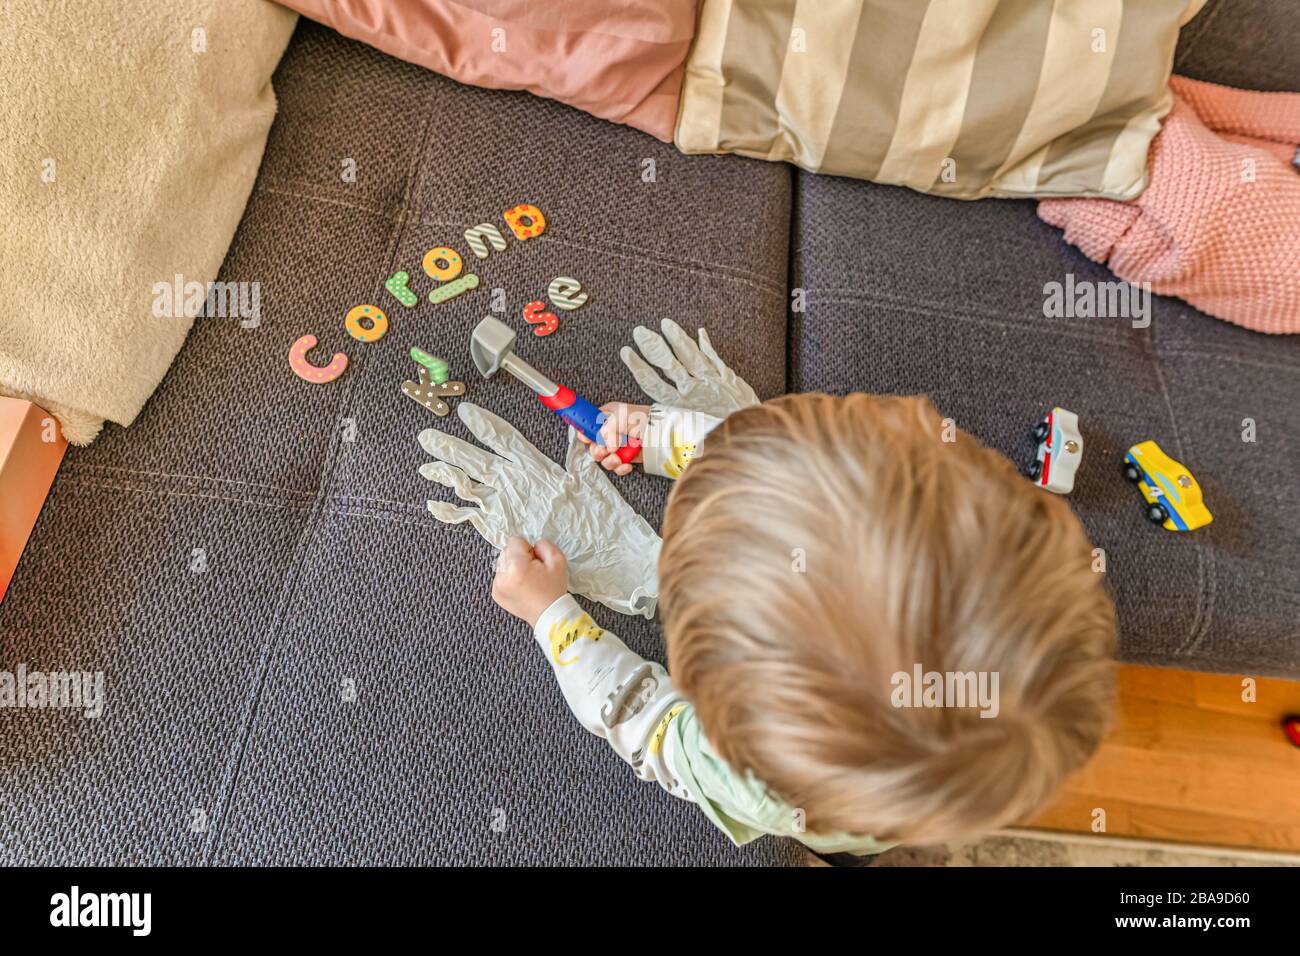 Letras escritas Corona KRise en alemán palabras con un niño pequeño viendo los guantes de desinfección mientras interrumpe su juego. Foto de stock